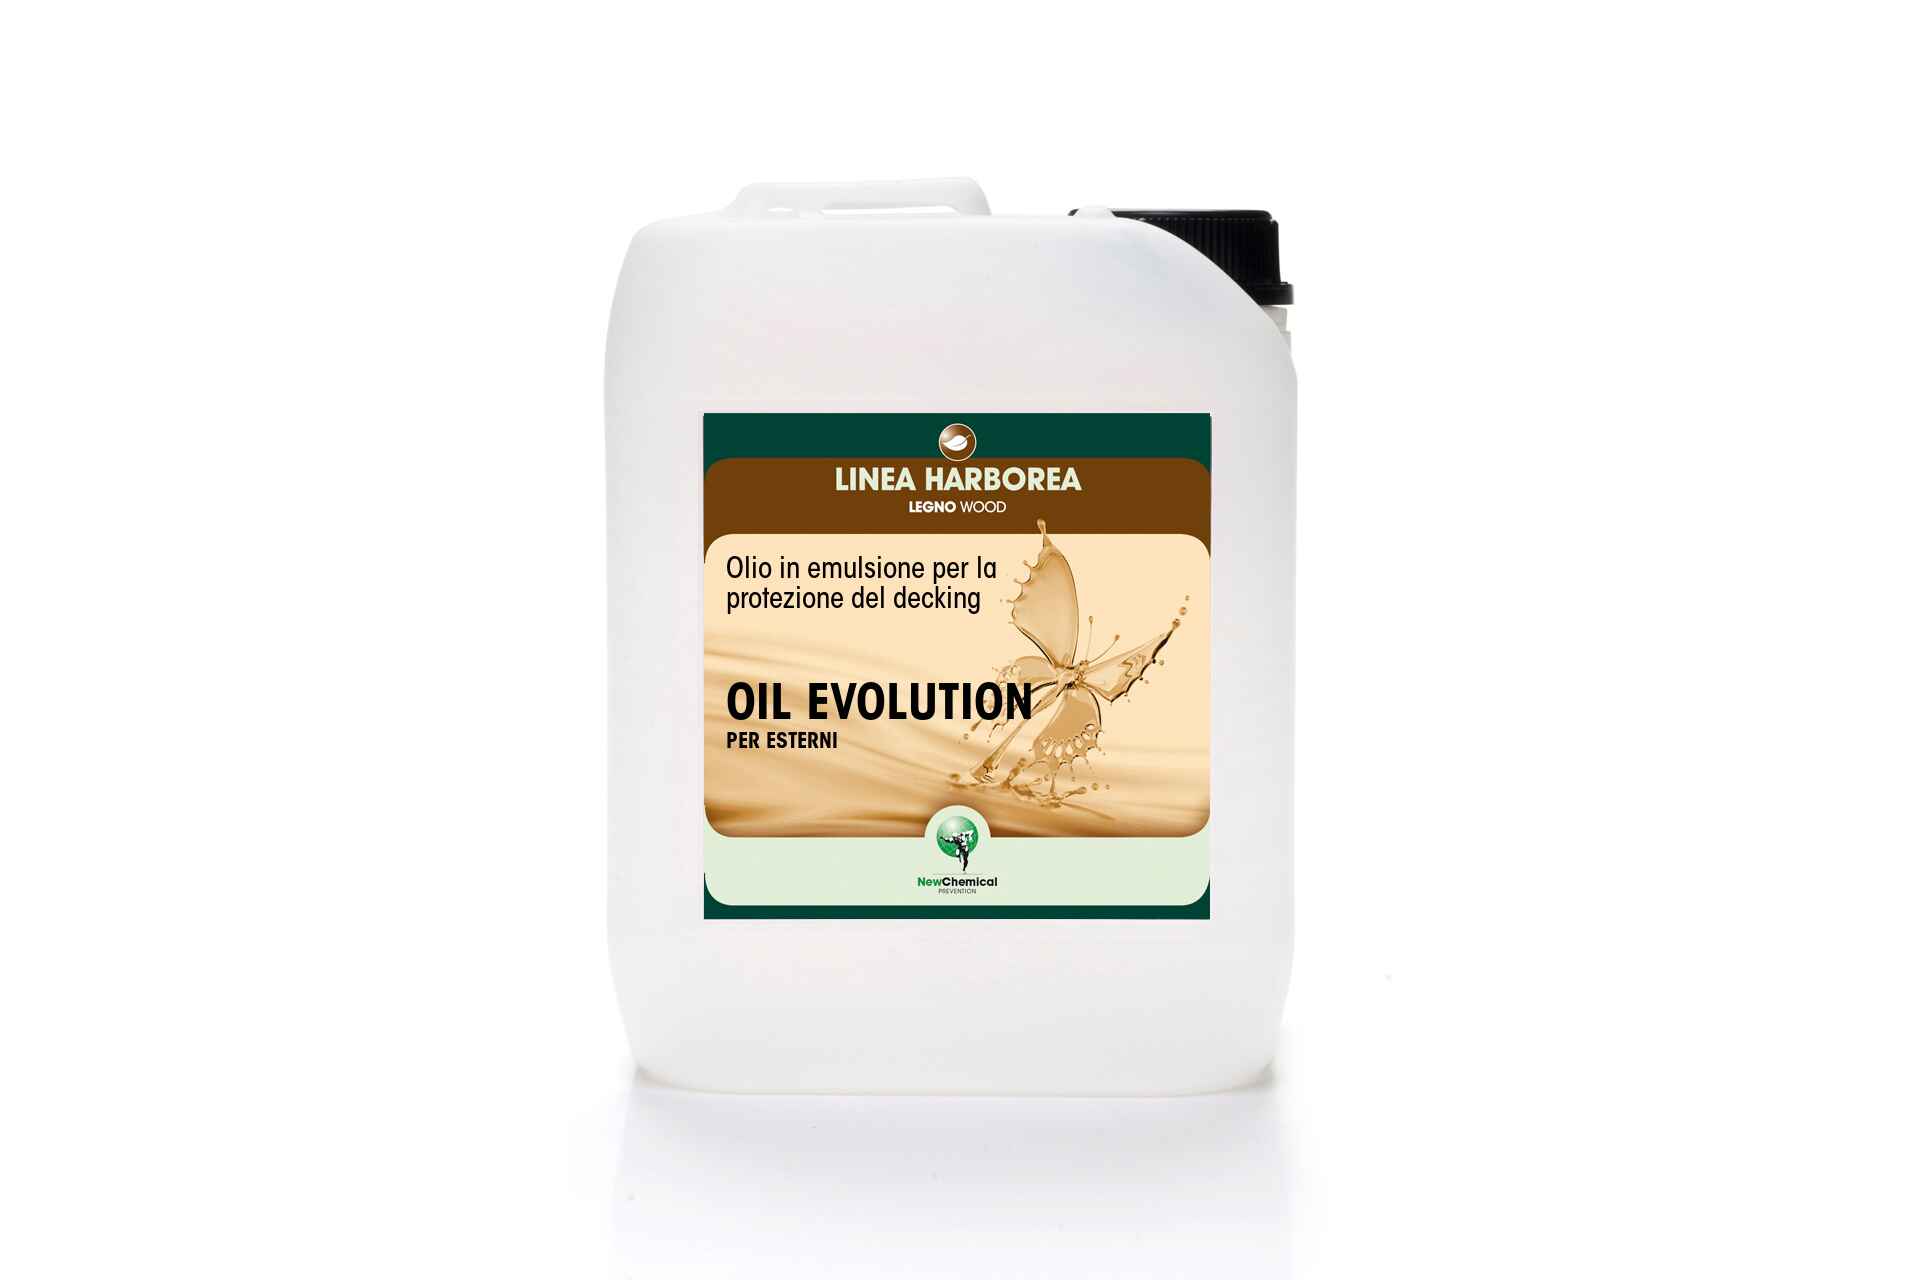 Oil Evolution